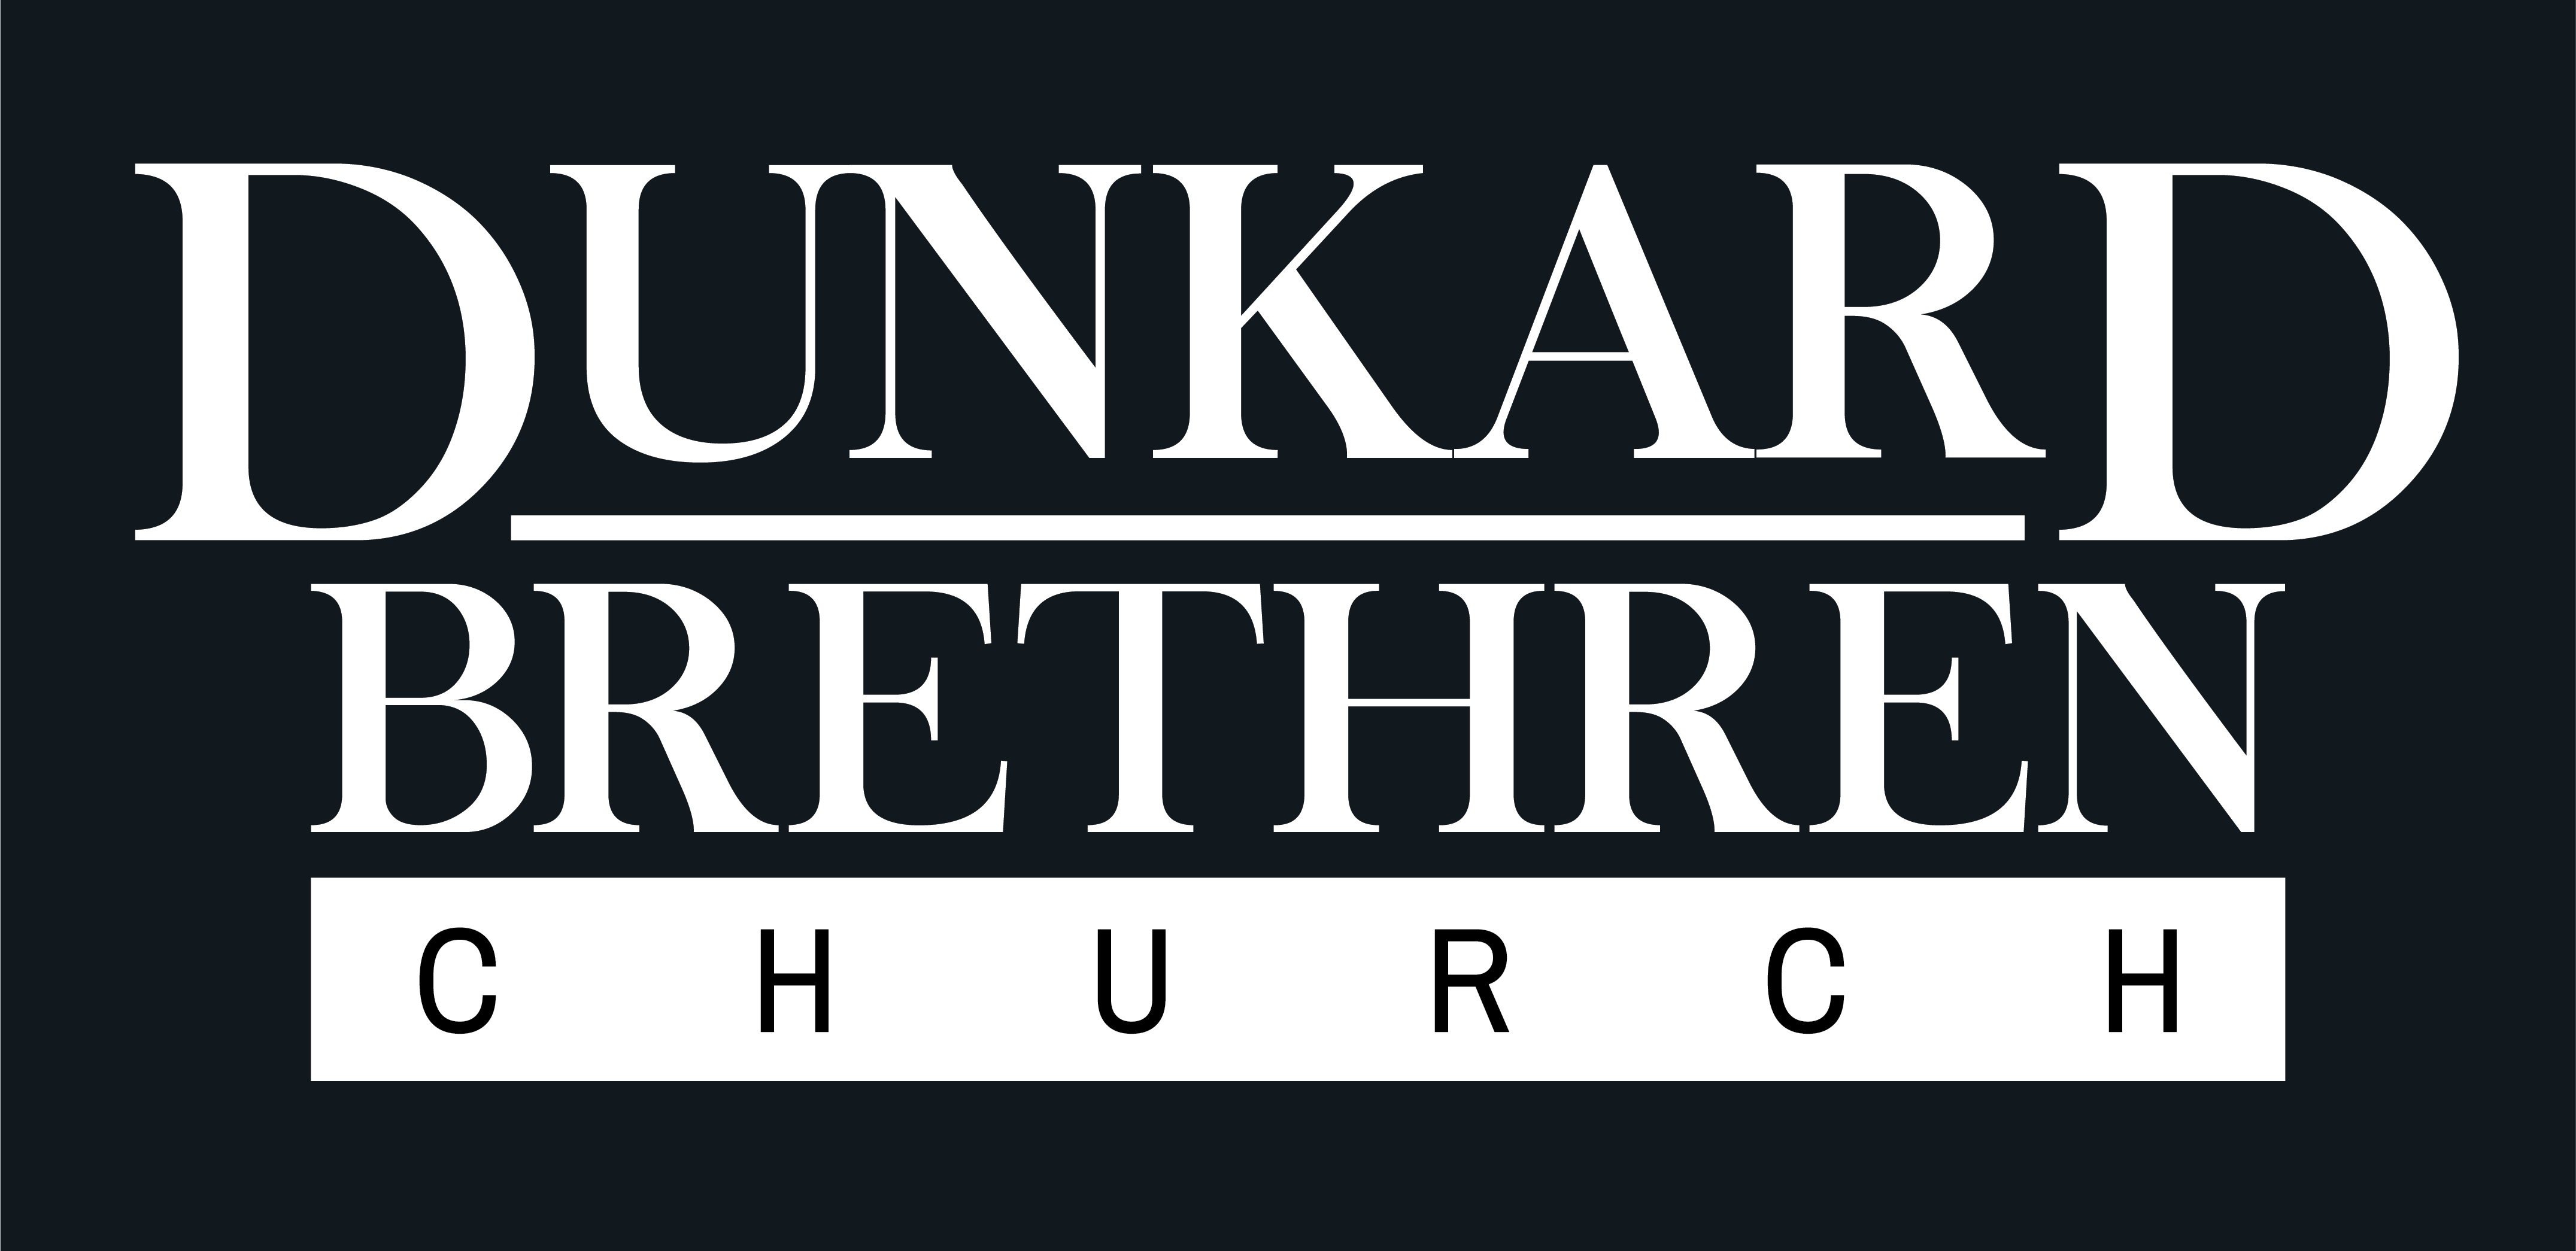 Dunkard Brethren Church